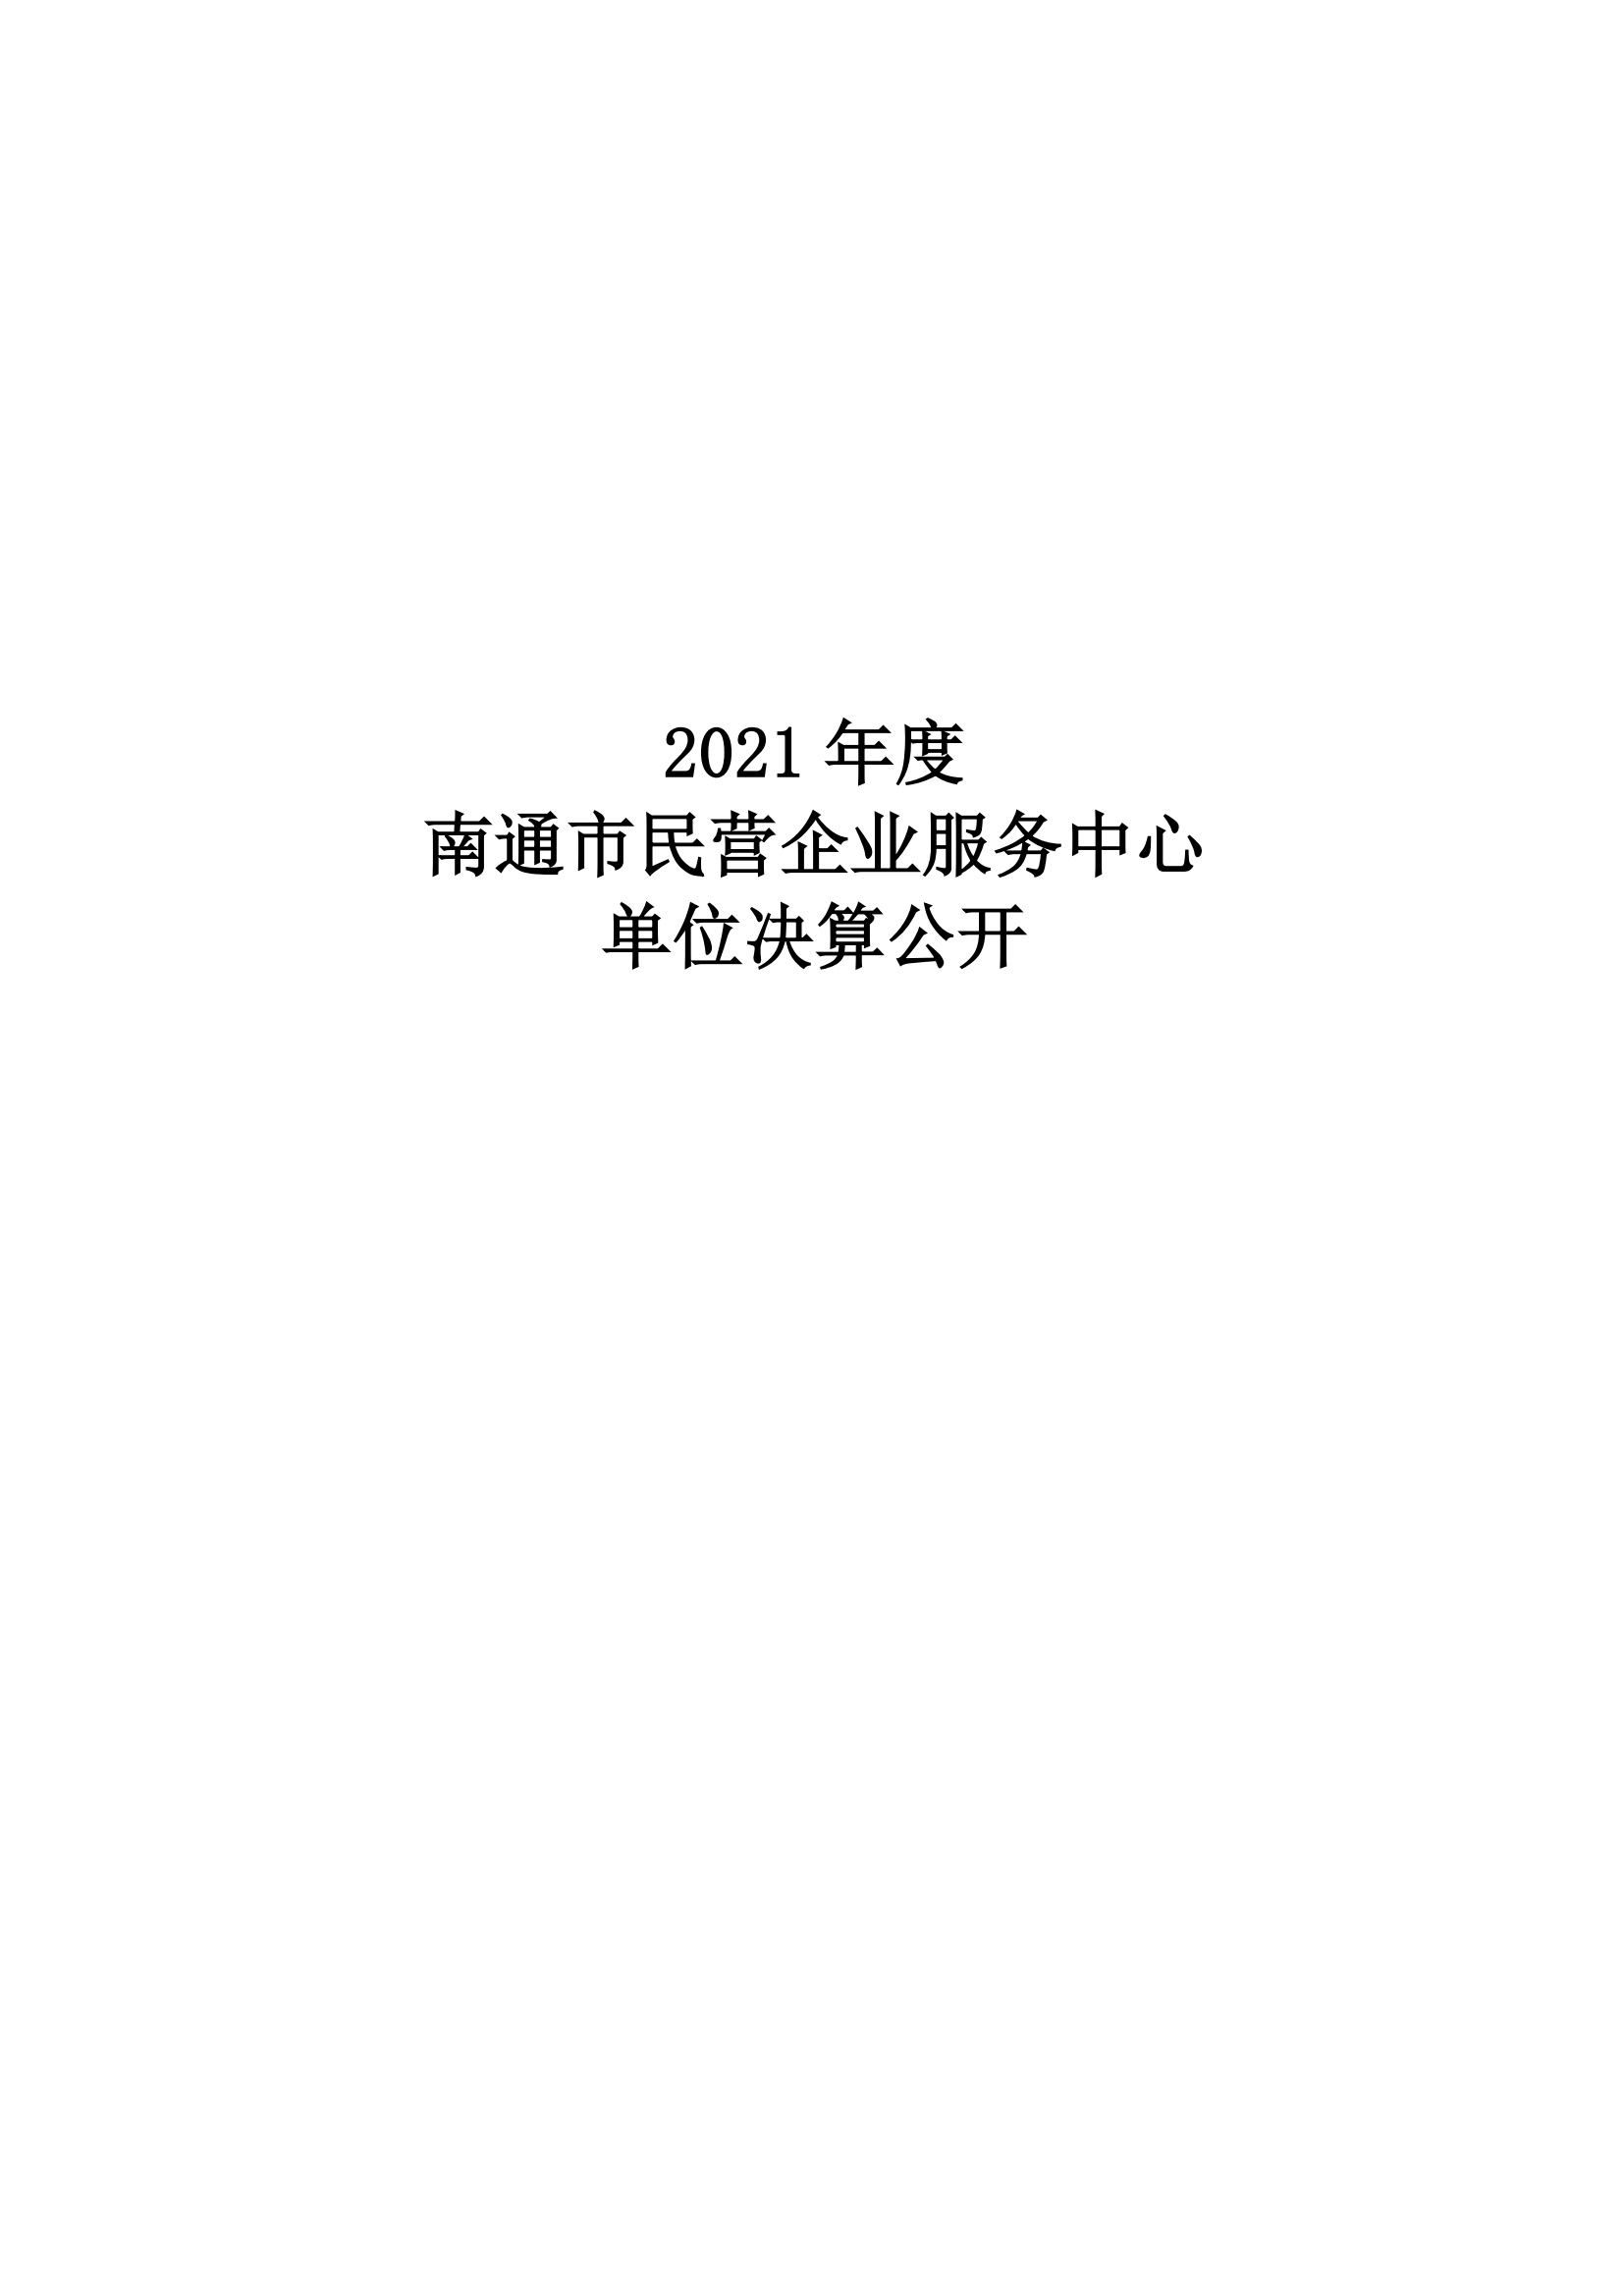 南通市民营企业服务中心2021年度单位决算公开 -终版(1)_00.png